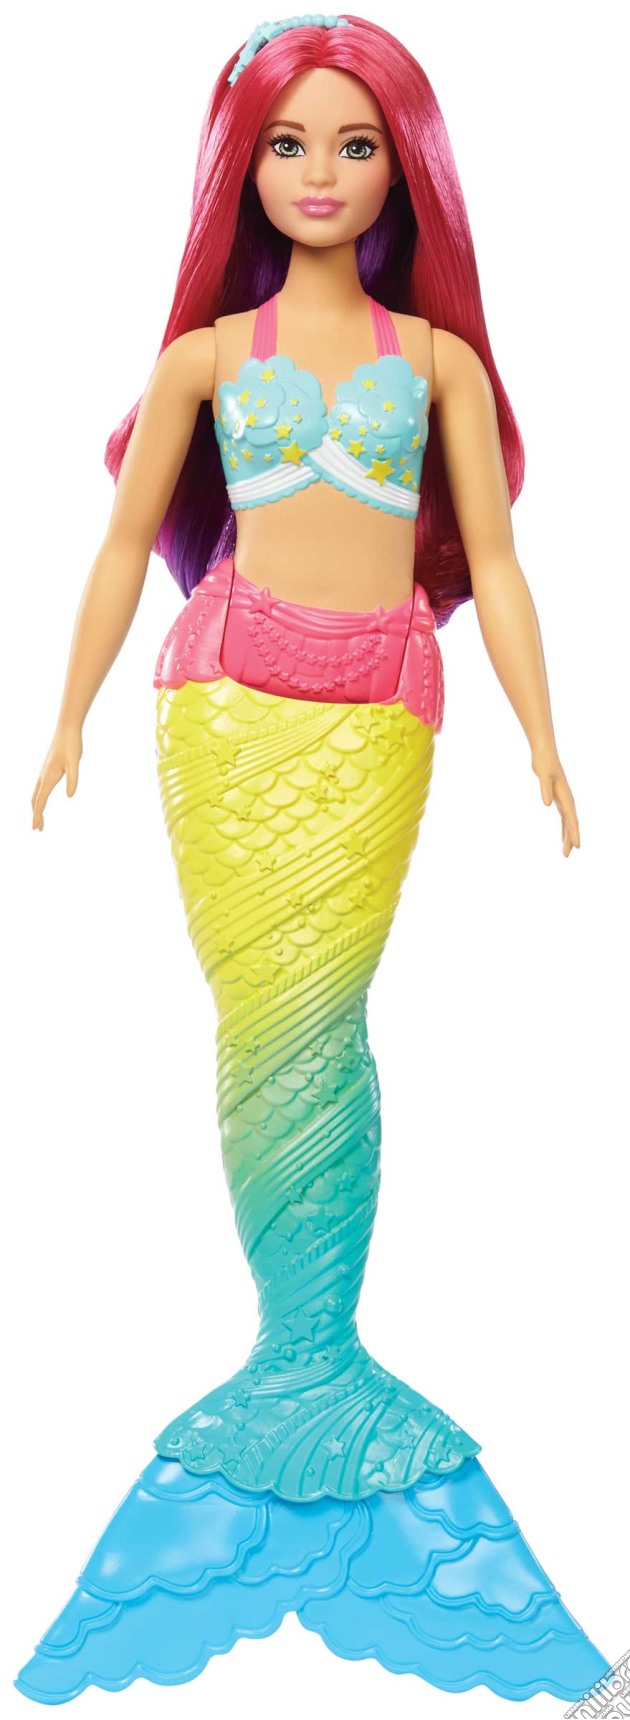 Mattel FJC93 - Barbie - Dreamtopia - Sirena Caucasian Curvy gioco di Mattel